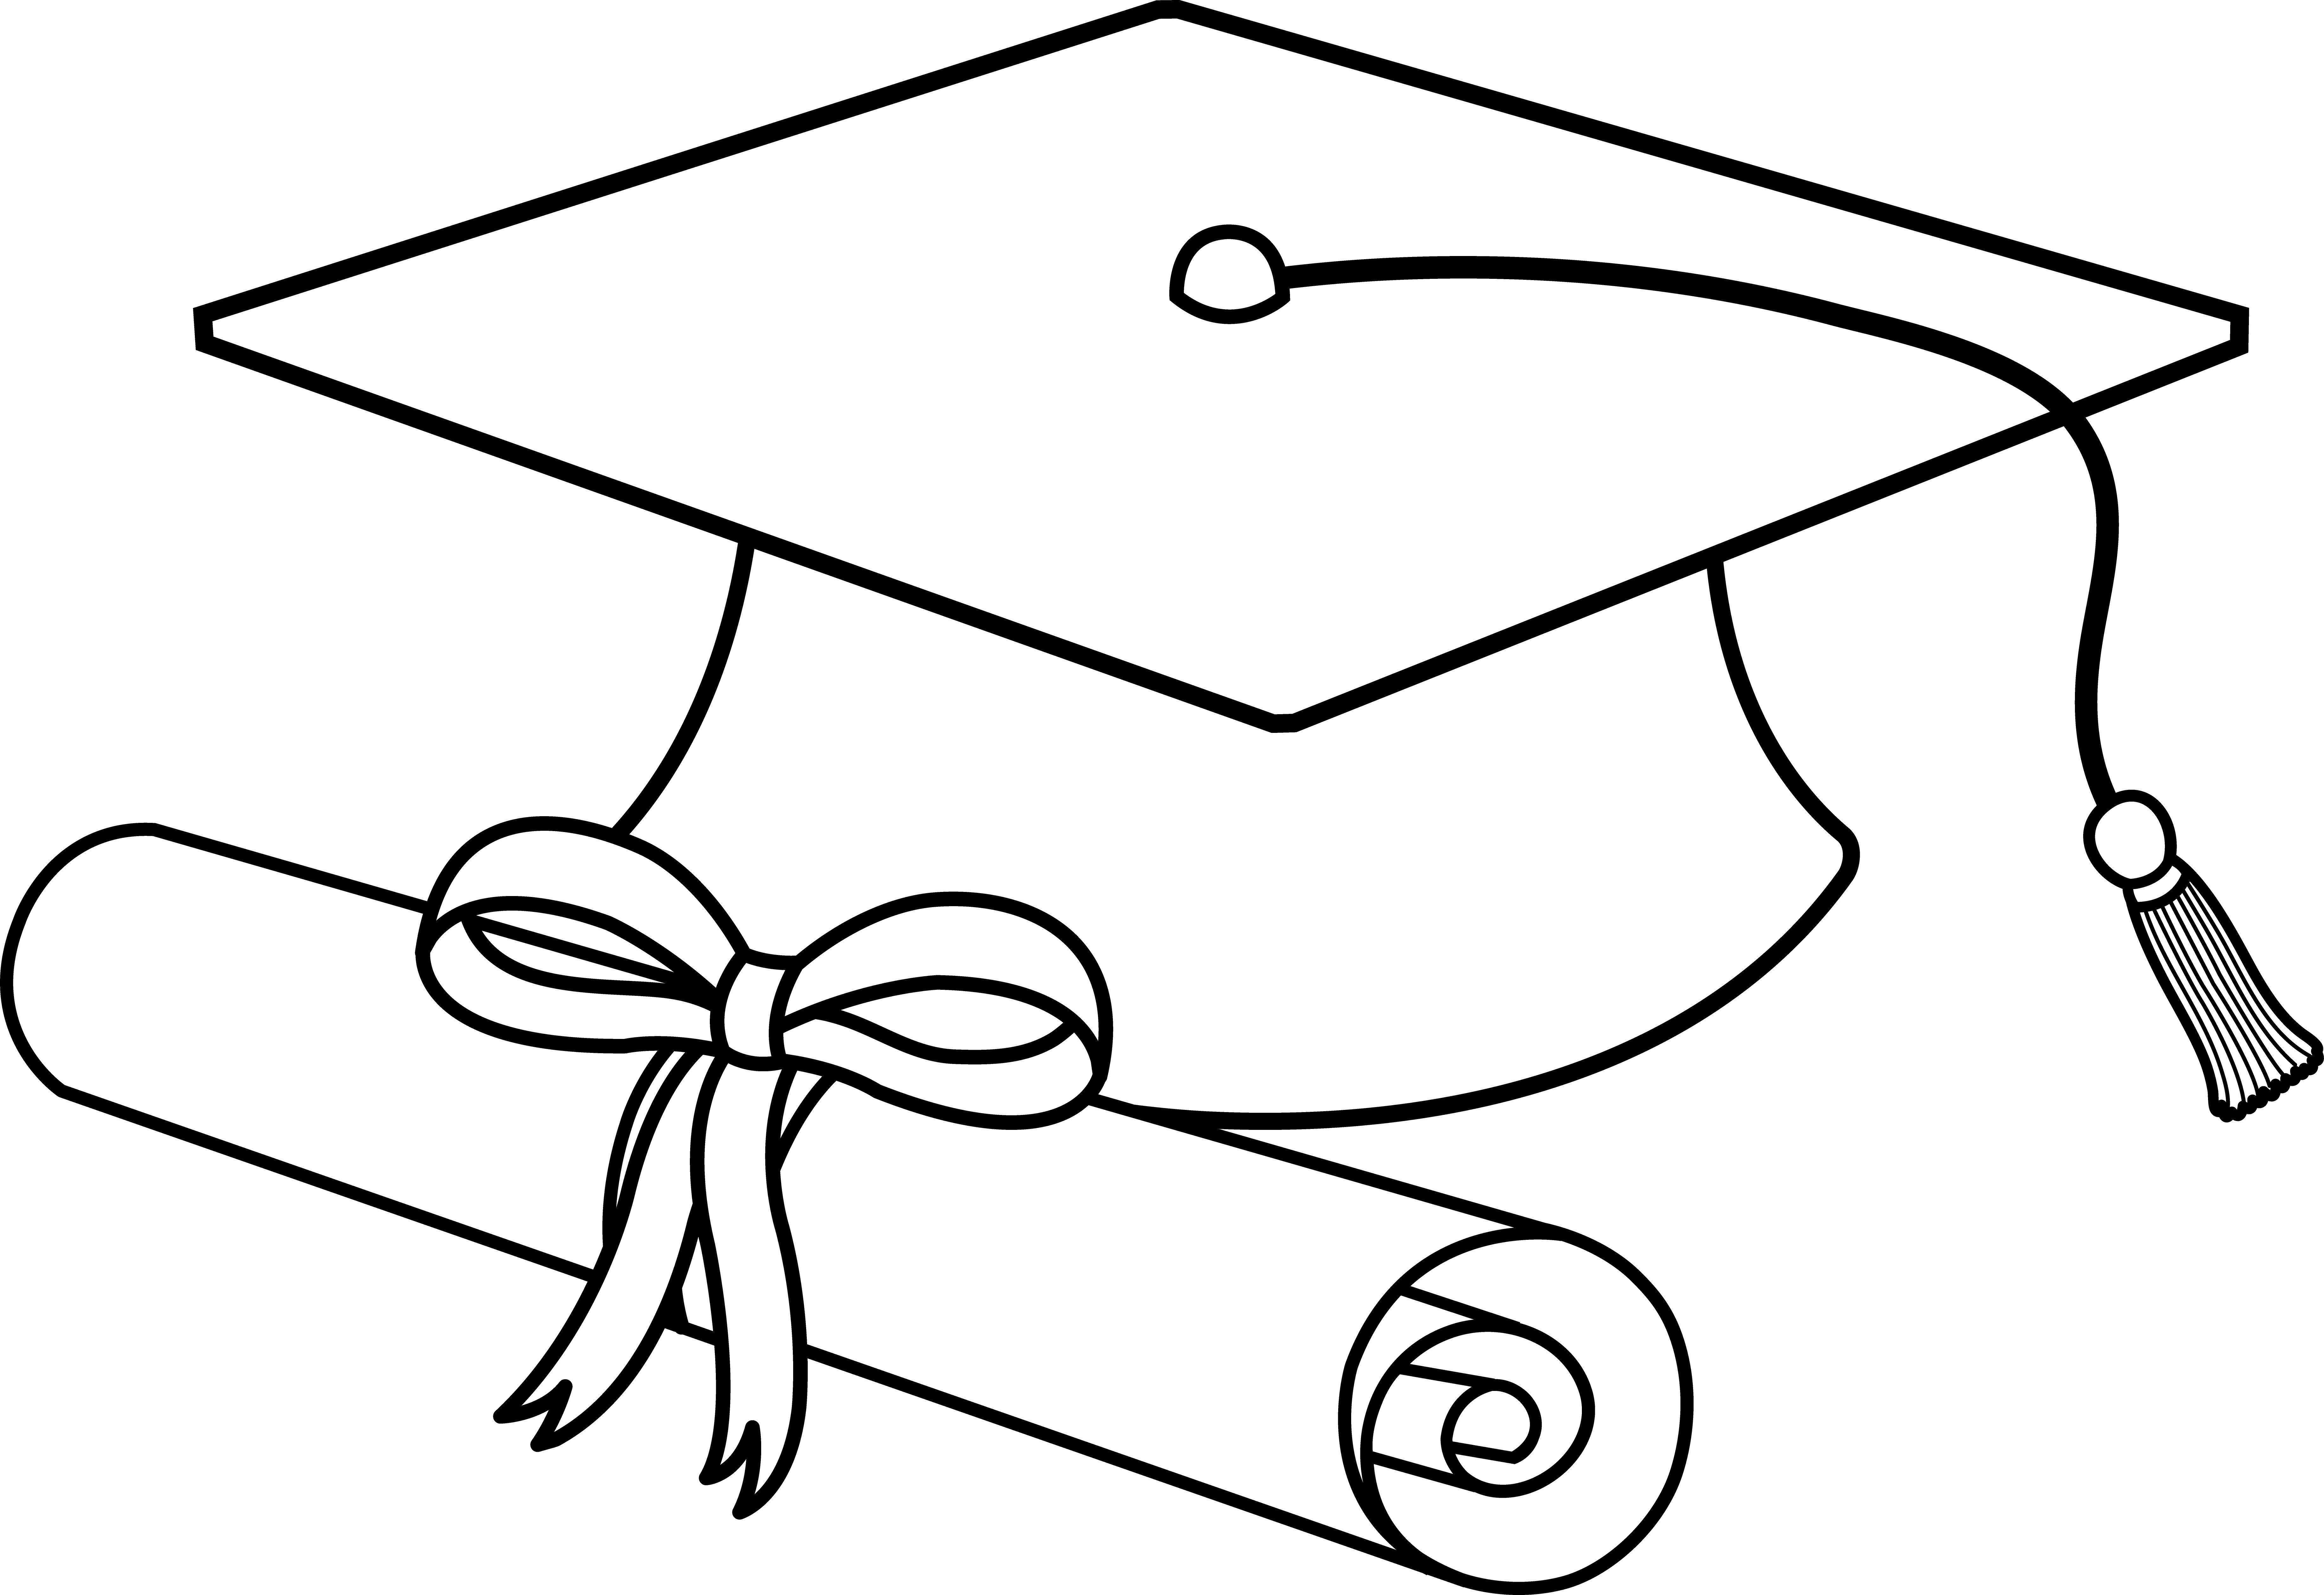 Flying Graduation Caps Clip A - Graduation Hats Clip Art